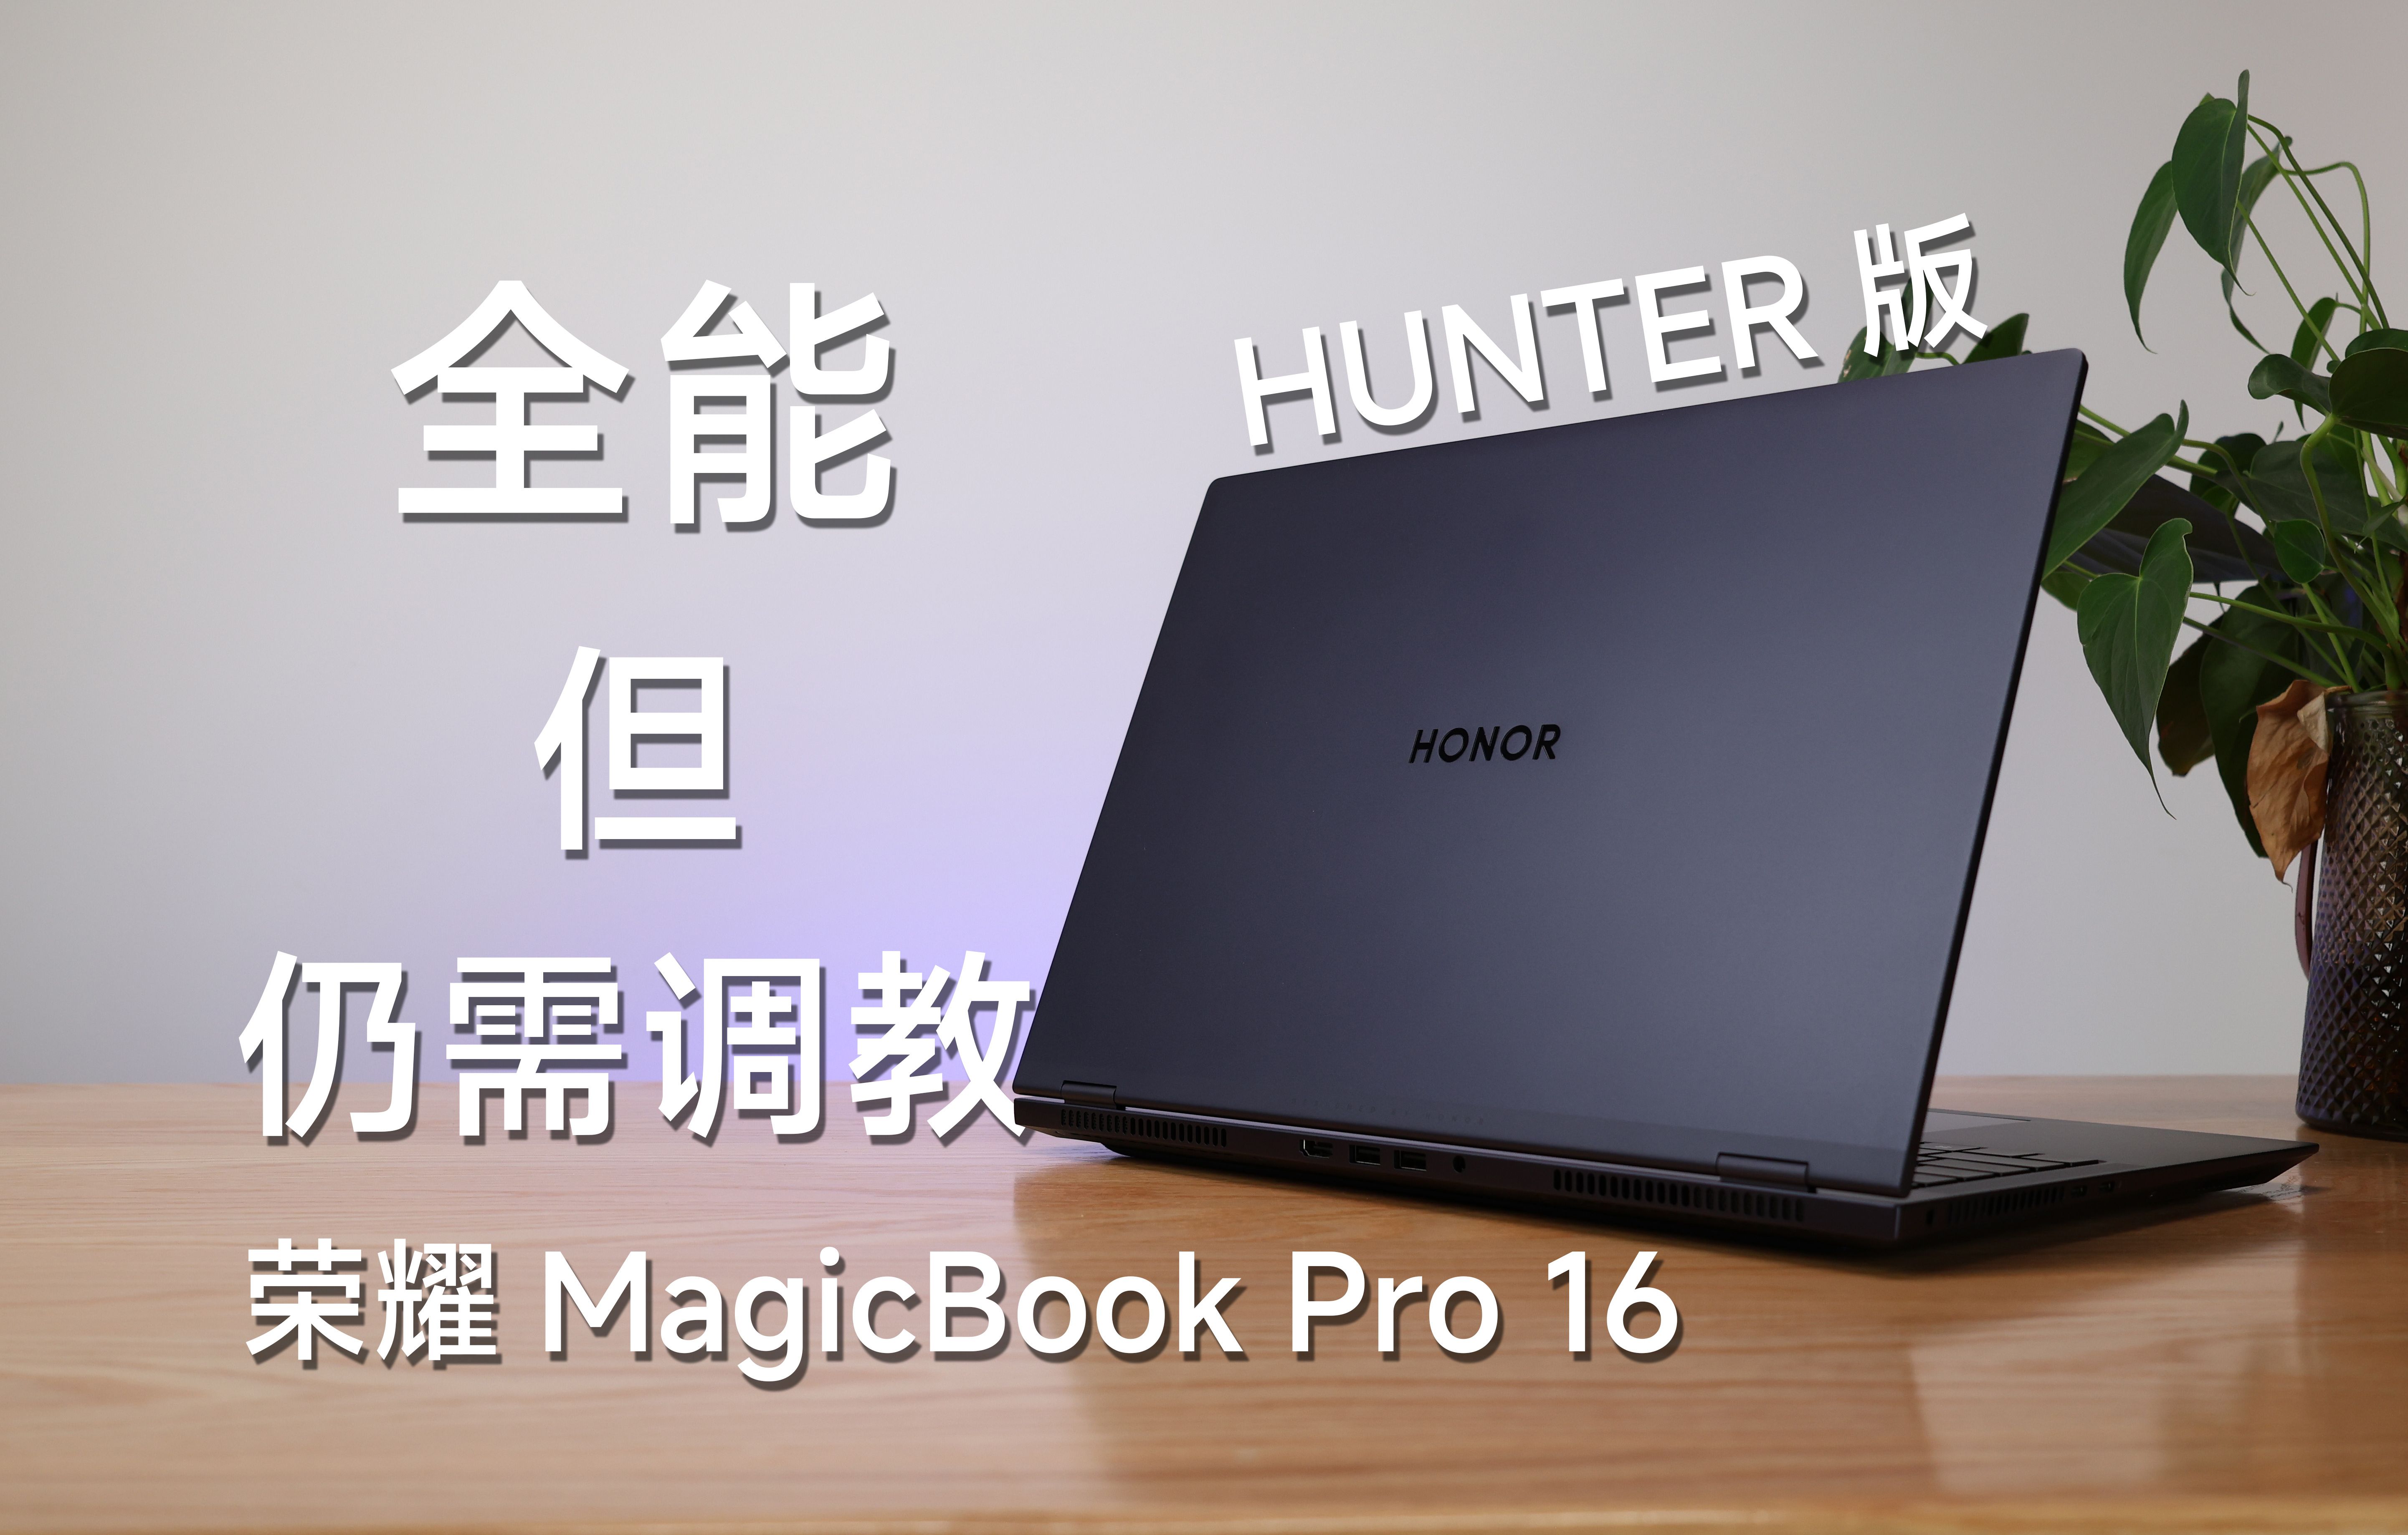 【月明】全能西装猎人，但还得调调丨荣耀MagicBook Pro 16 HUNTER版晚发测评